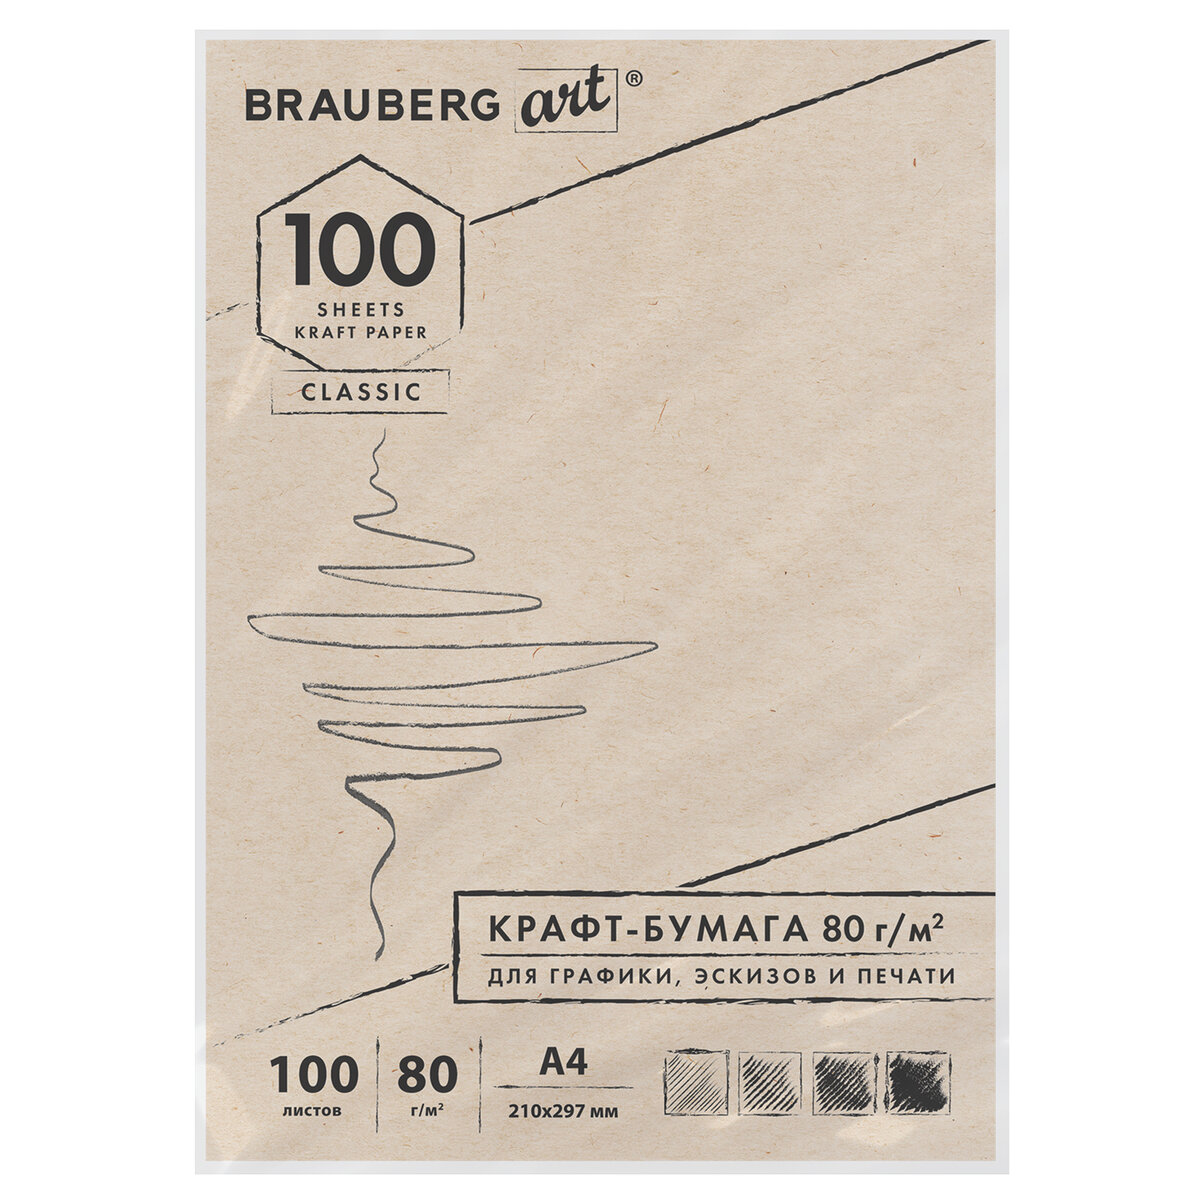 Крафт-бумага для графики Brauberg эскизов печати Art Classic А4 100л - фото 1